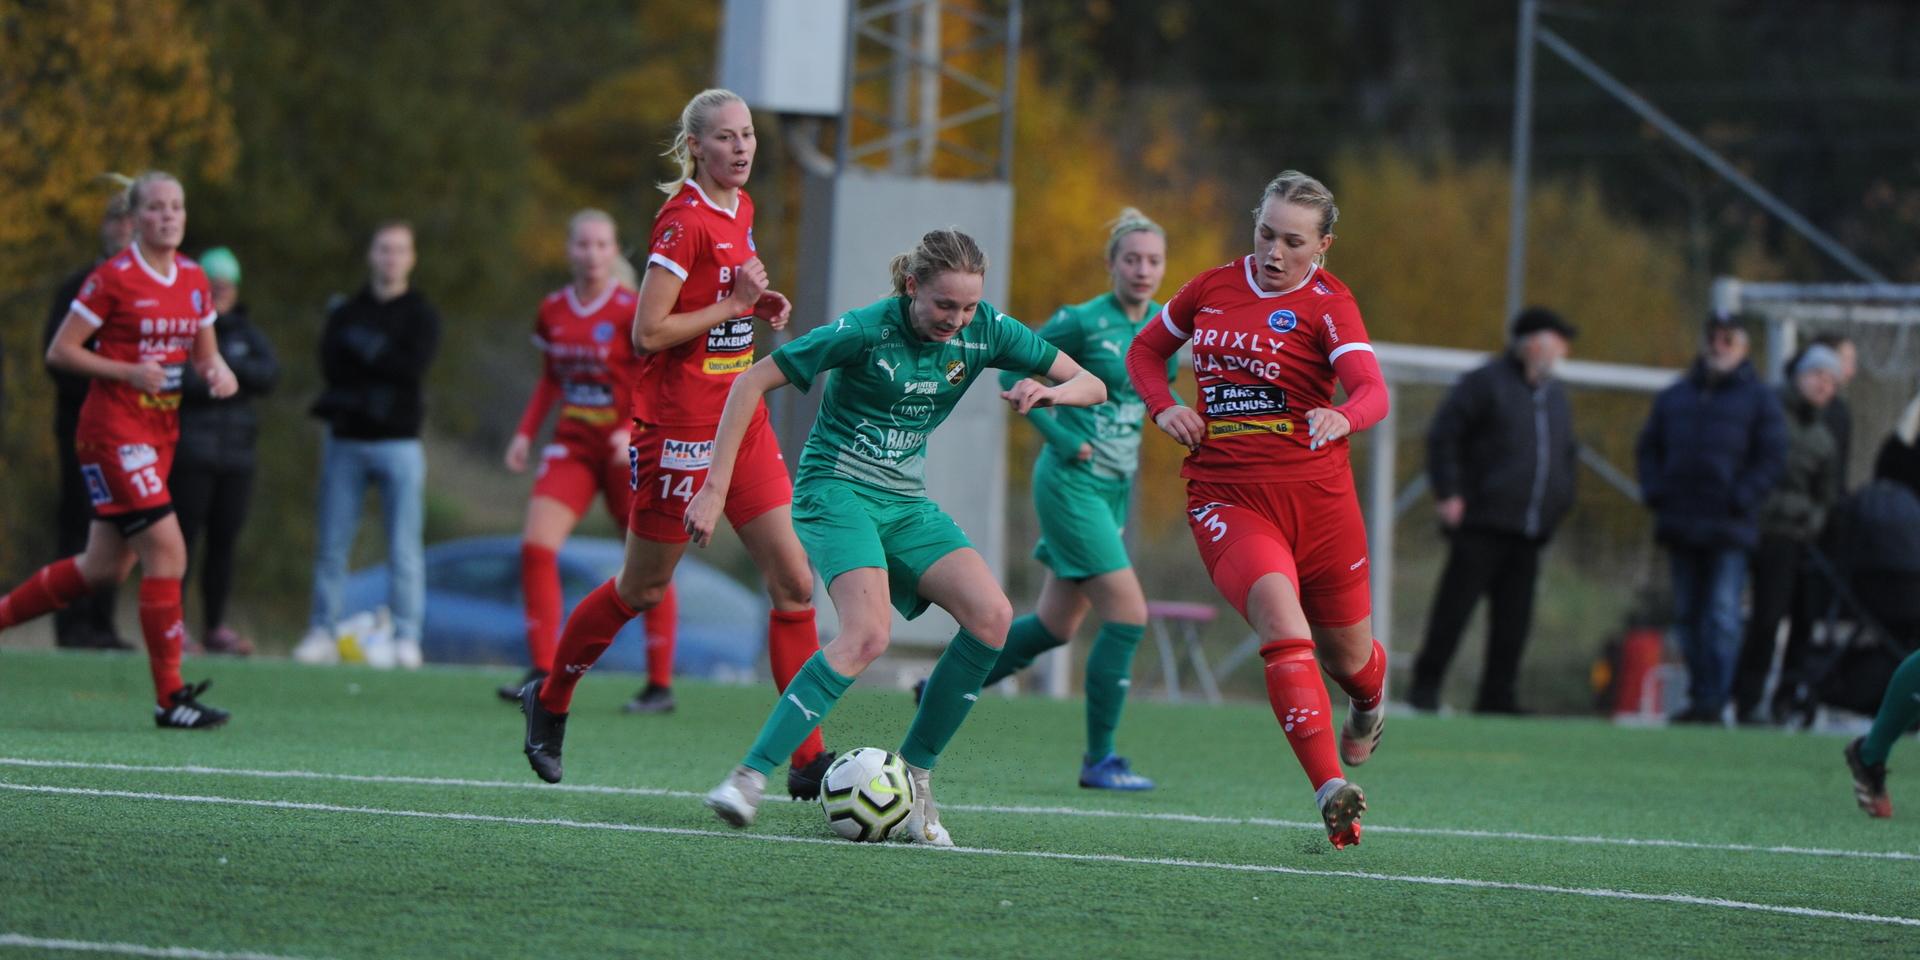 Rössö besegrade Ljungskile i DM-finalen 2020 med klara 3–0.